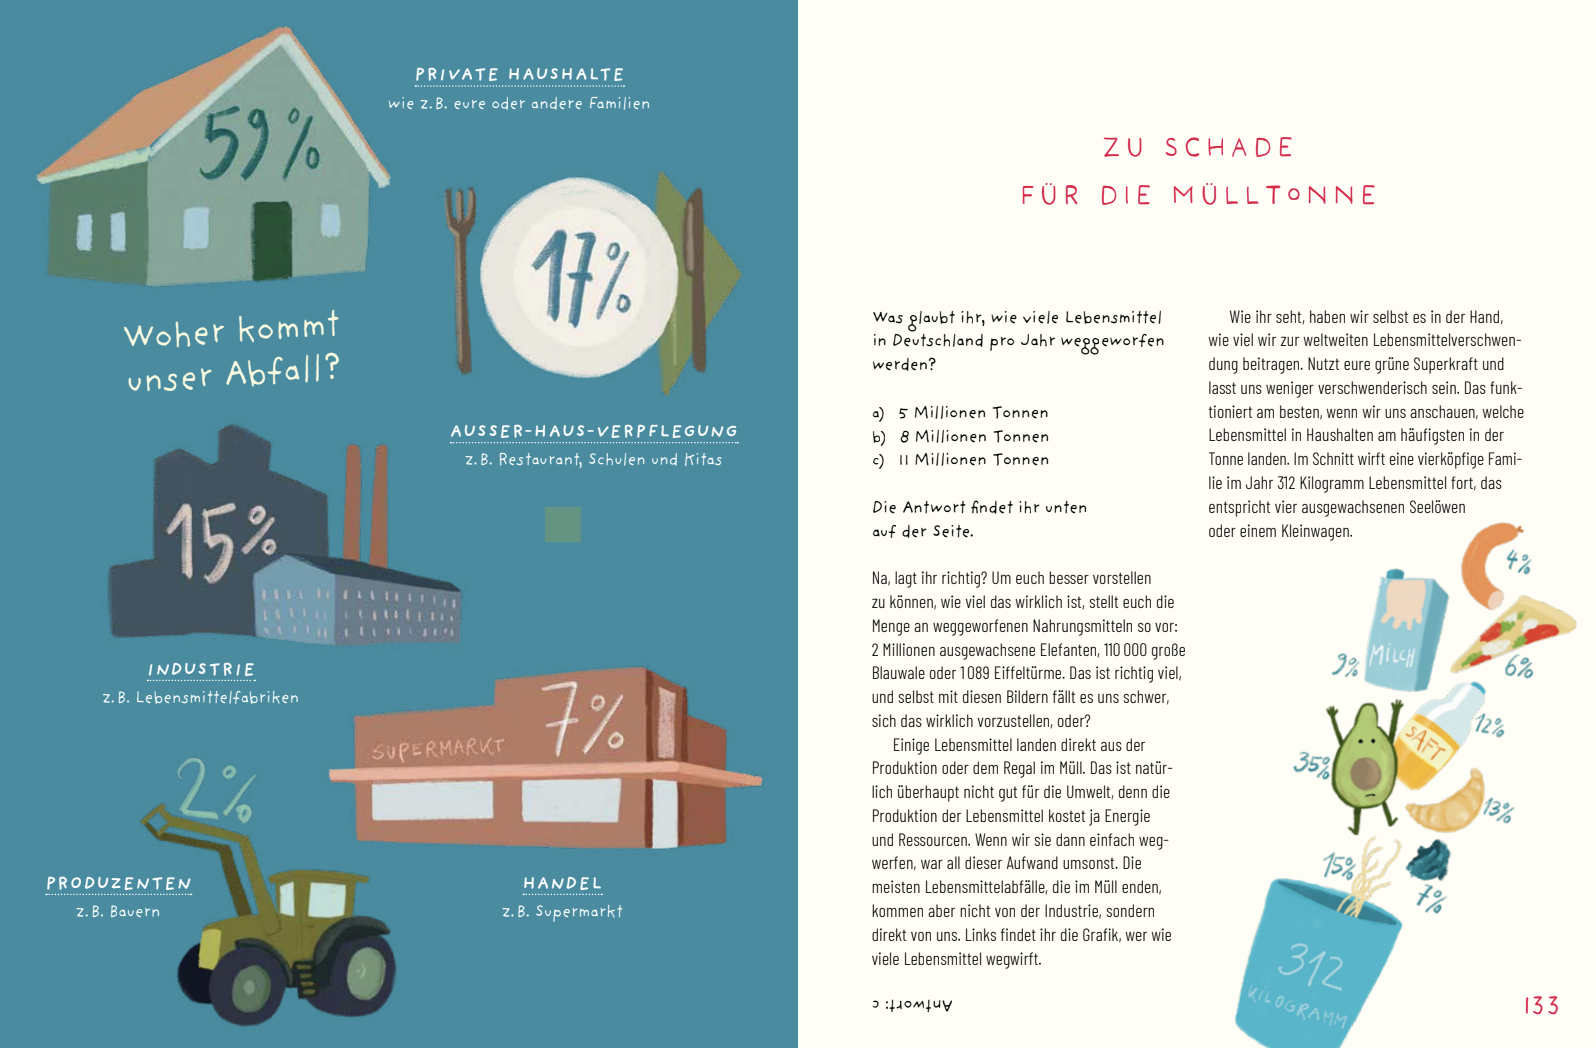 "Das grüne Kochbuch für Kinder" von Charoline Bauer und Lia Carlucci